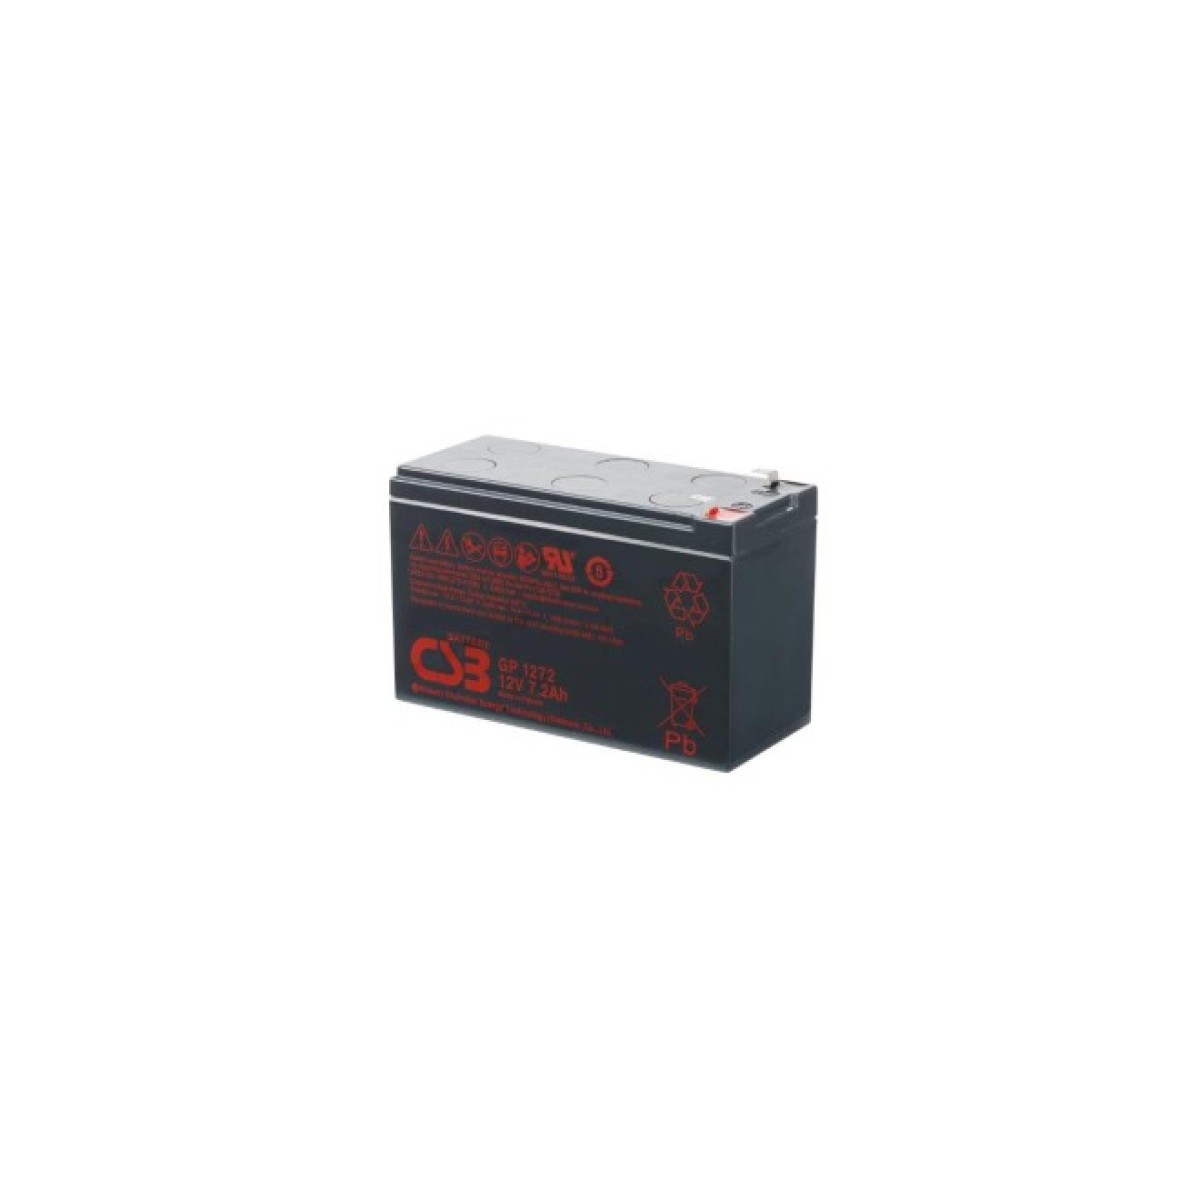 Батарея к ИБП CSB 12В 7.2 Ач (GP1272F2) 256_256.jpg